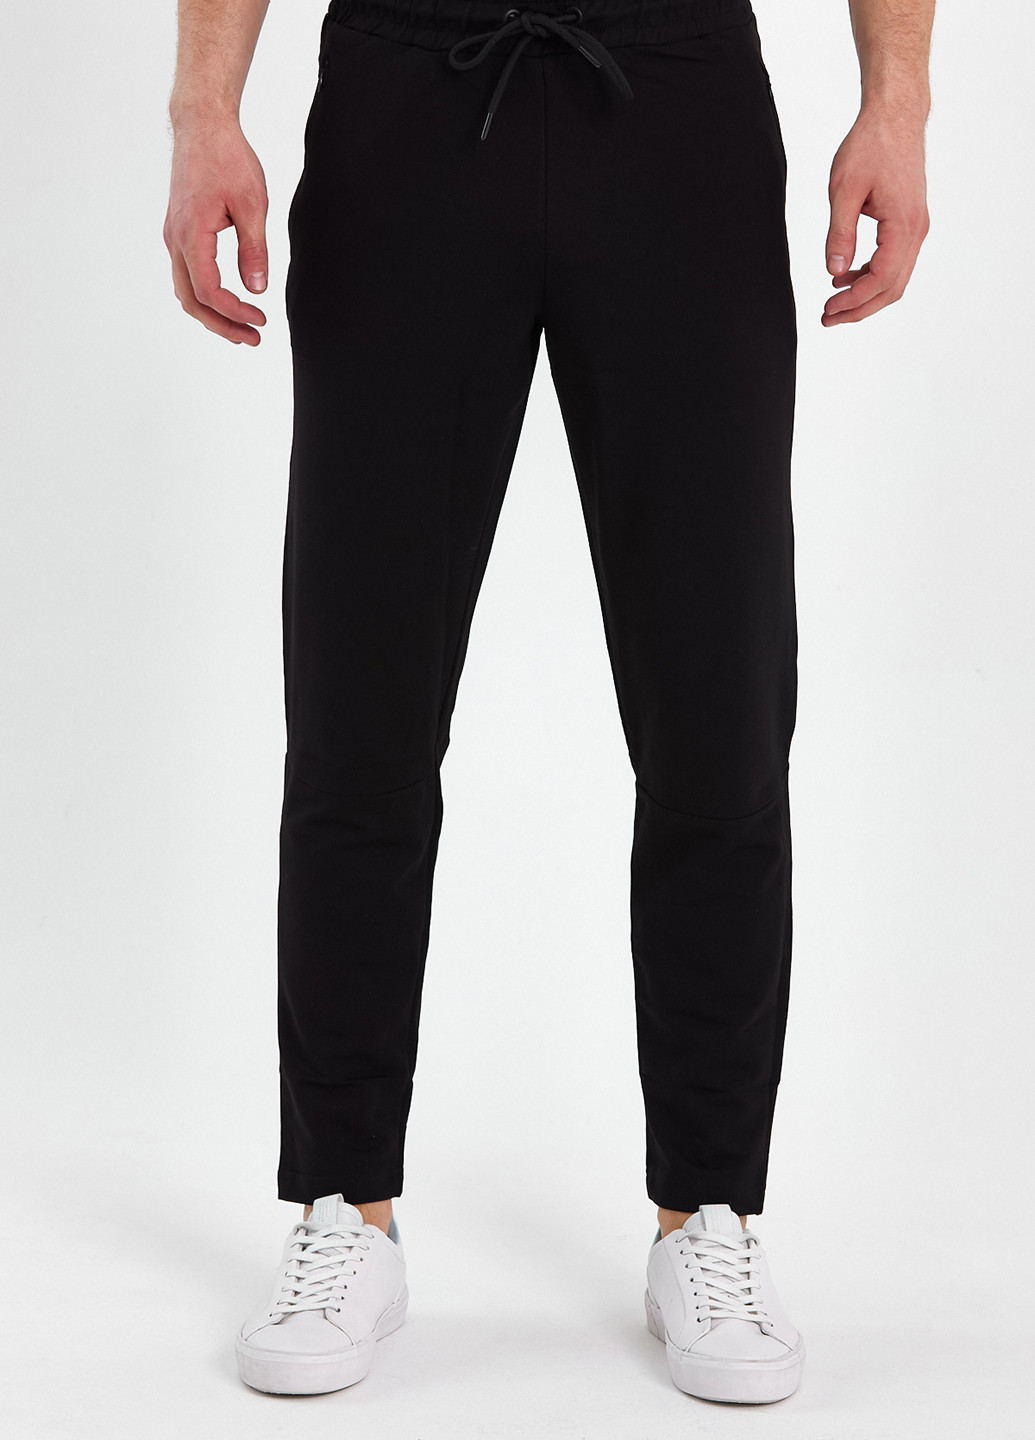 Черные спортивные демисезонные прямые брюки Trend Collection